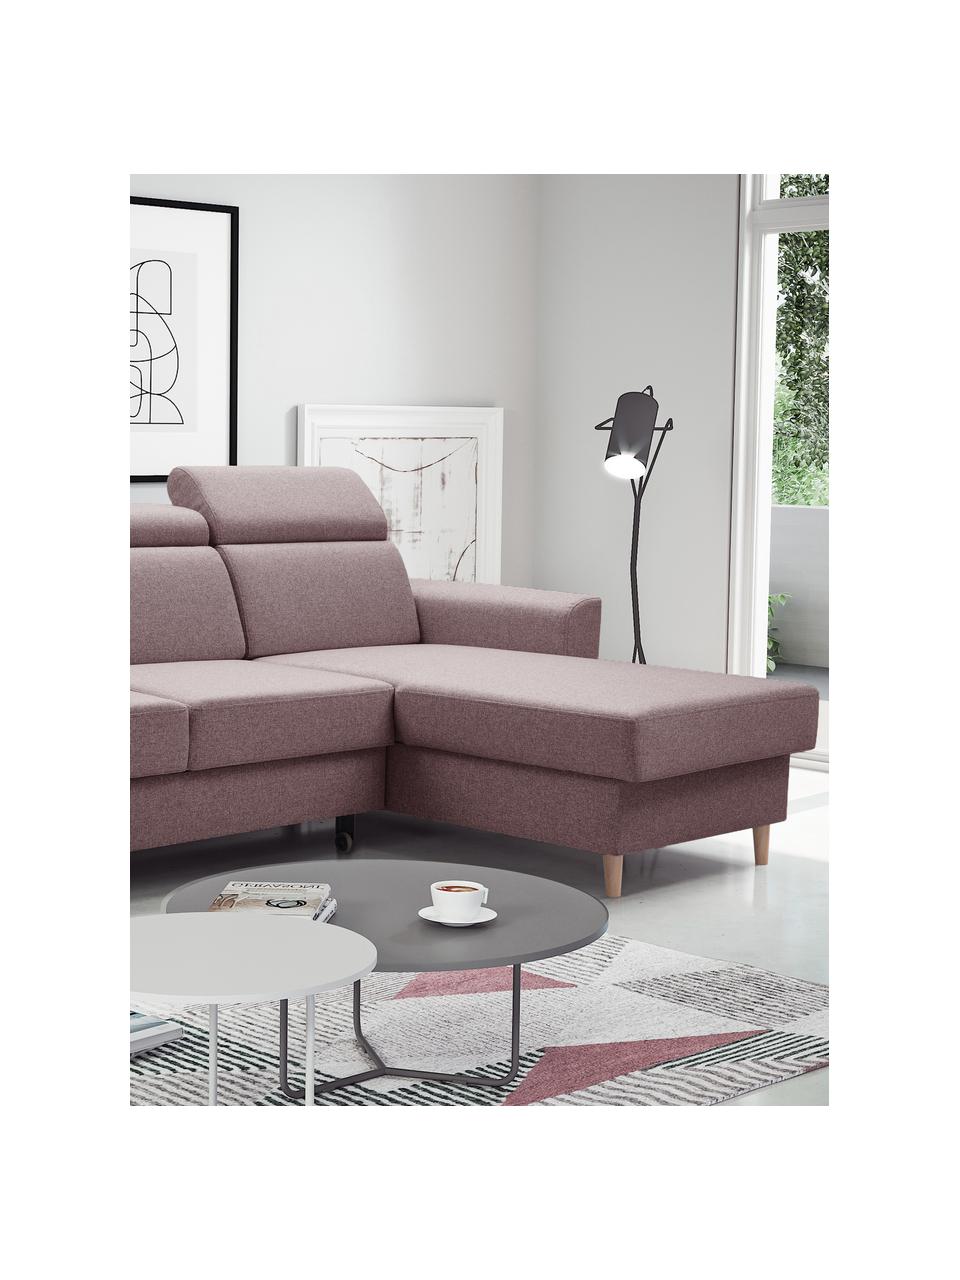 Sofa narożna z funkcją spania i miejscem do przechowywania Gusto (4-osobowa), Tapicerka: 100% poliester, Beżowy, S 235 x G 170 cm